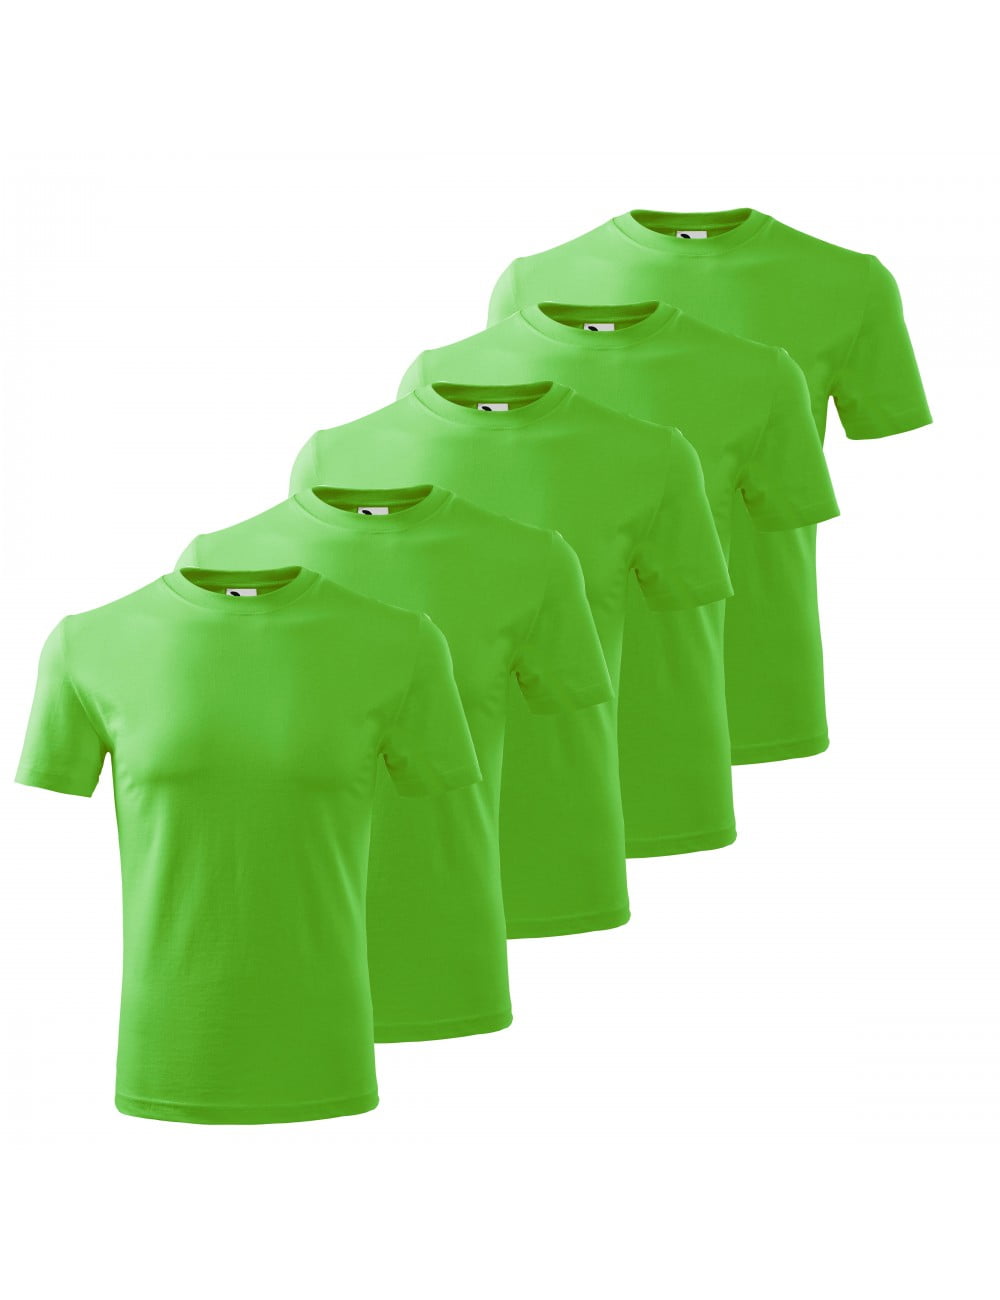 Previous distance Failure Set 5 tricouri pentru copii, Verde mar, P72-92X5 - Haine Simple